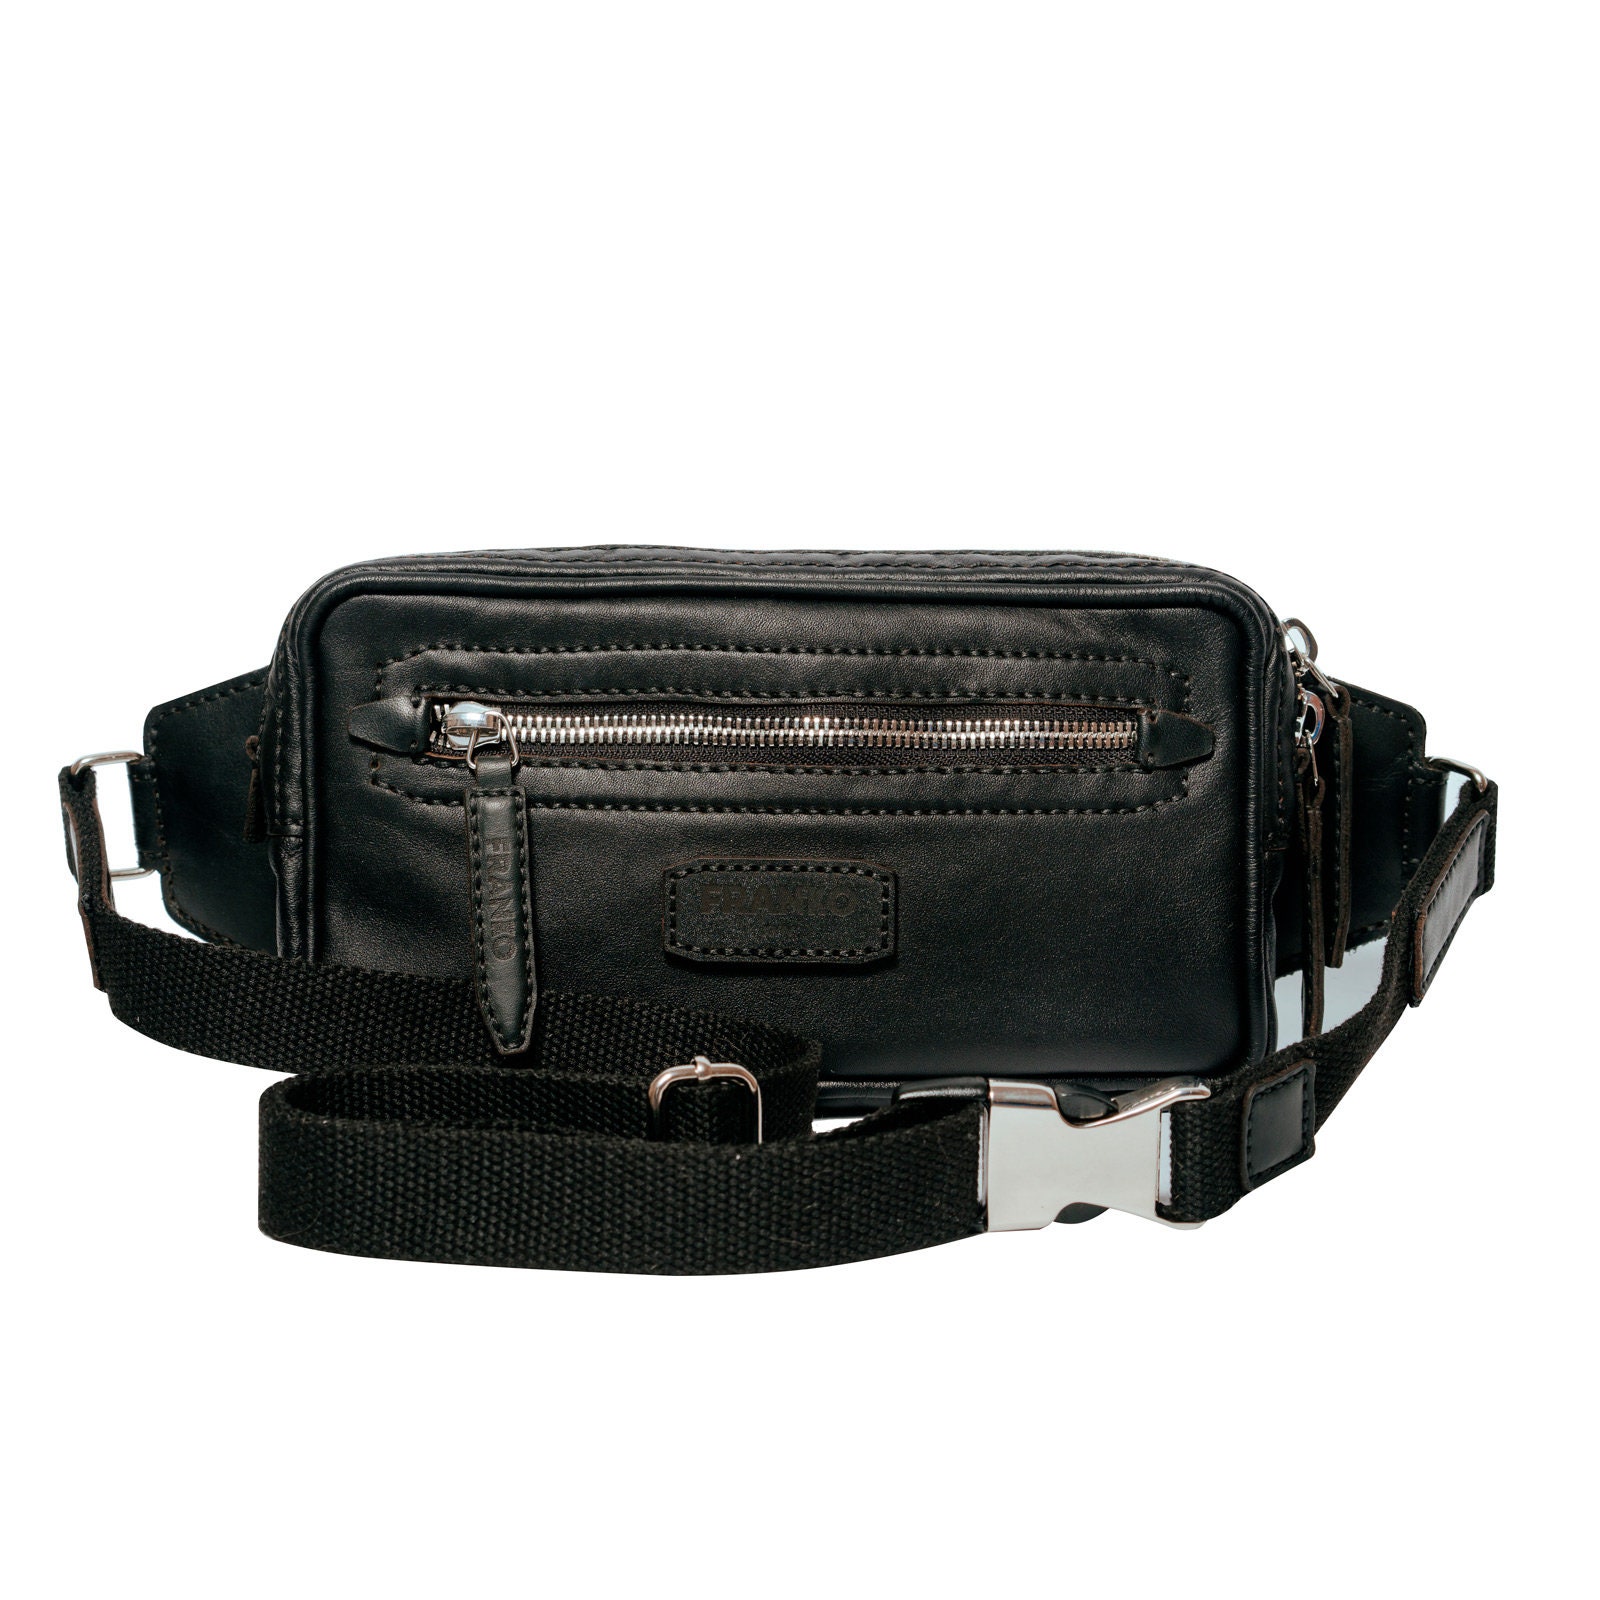 Belt black bag Unisex crossbody bag leather hip bag | Etsy